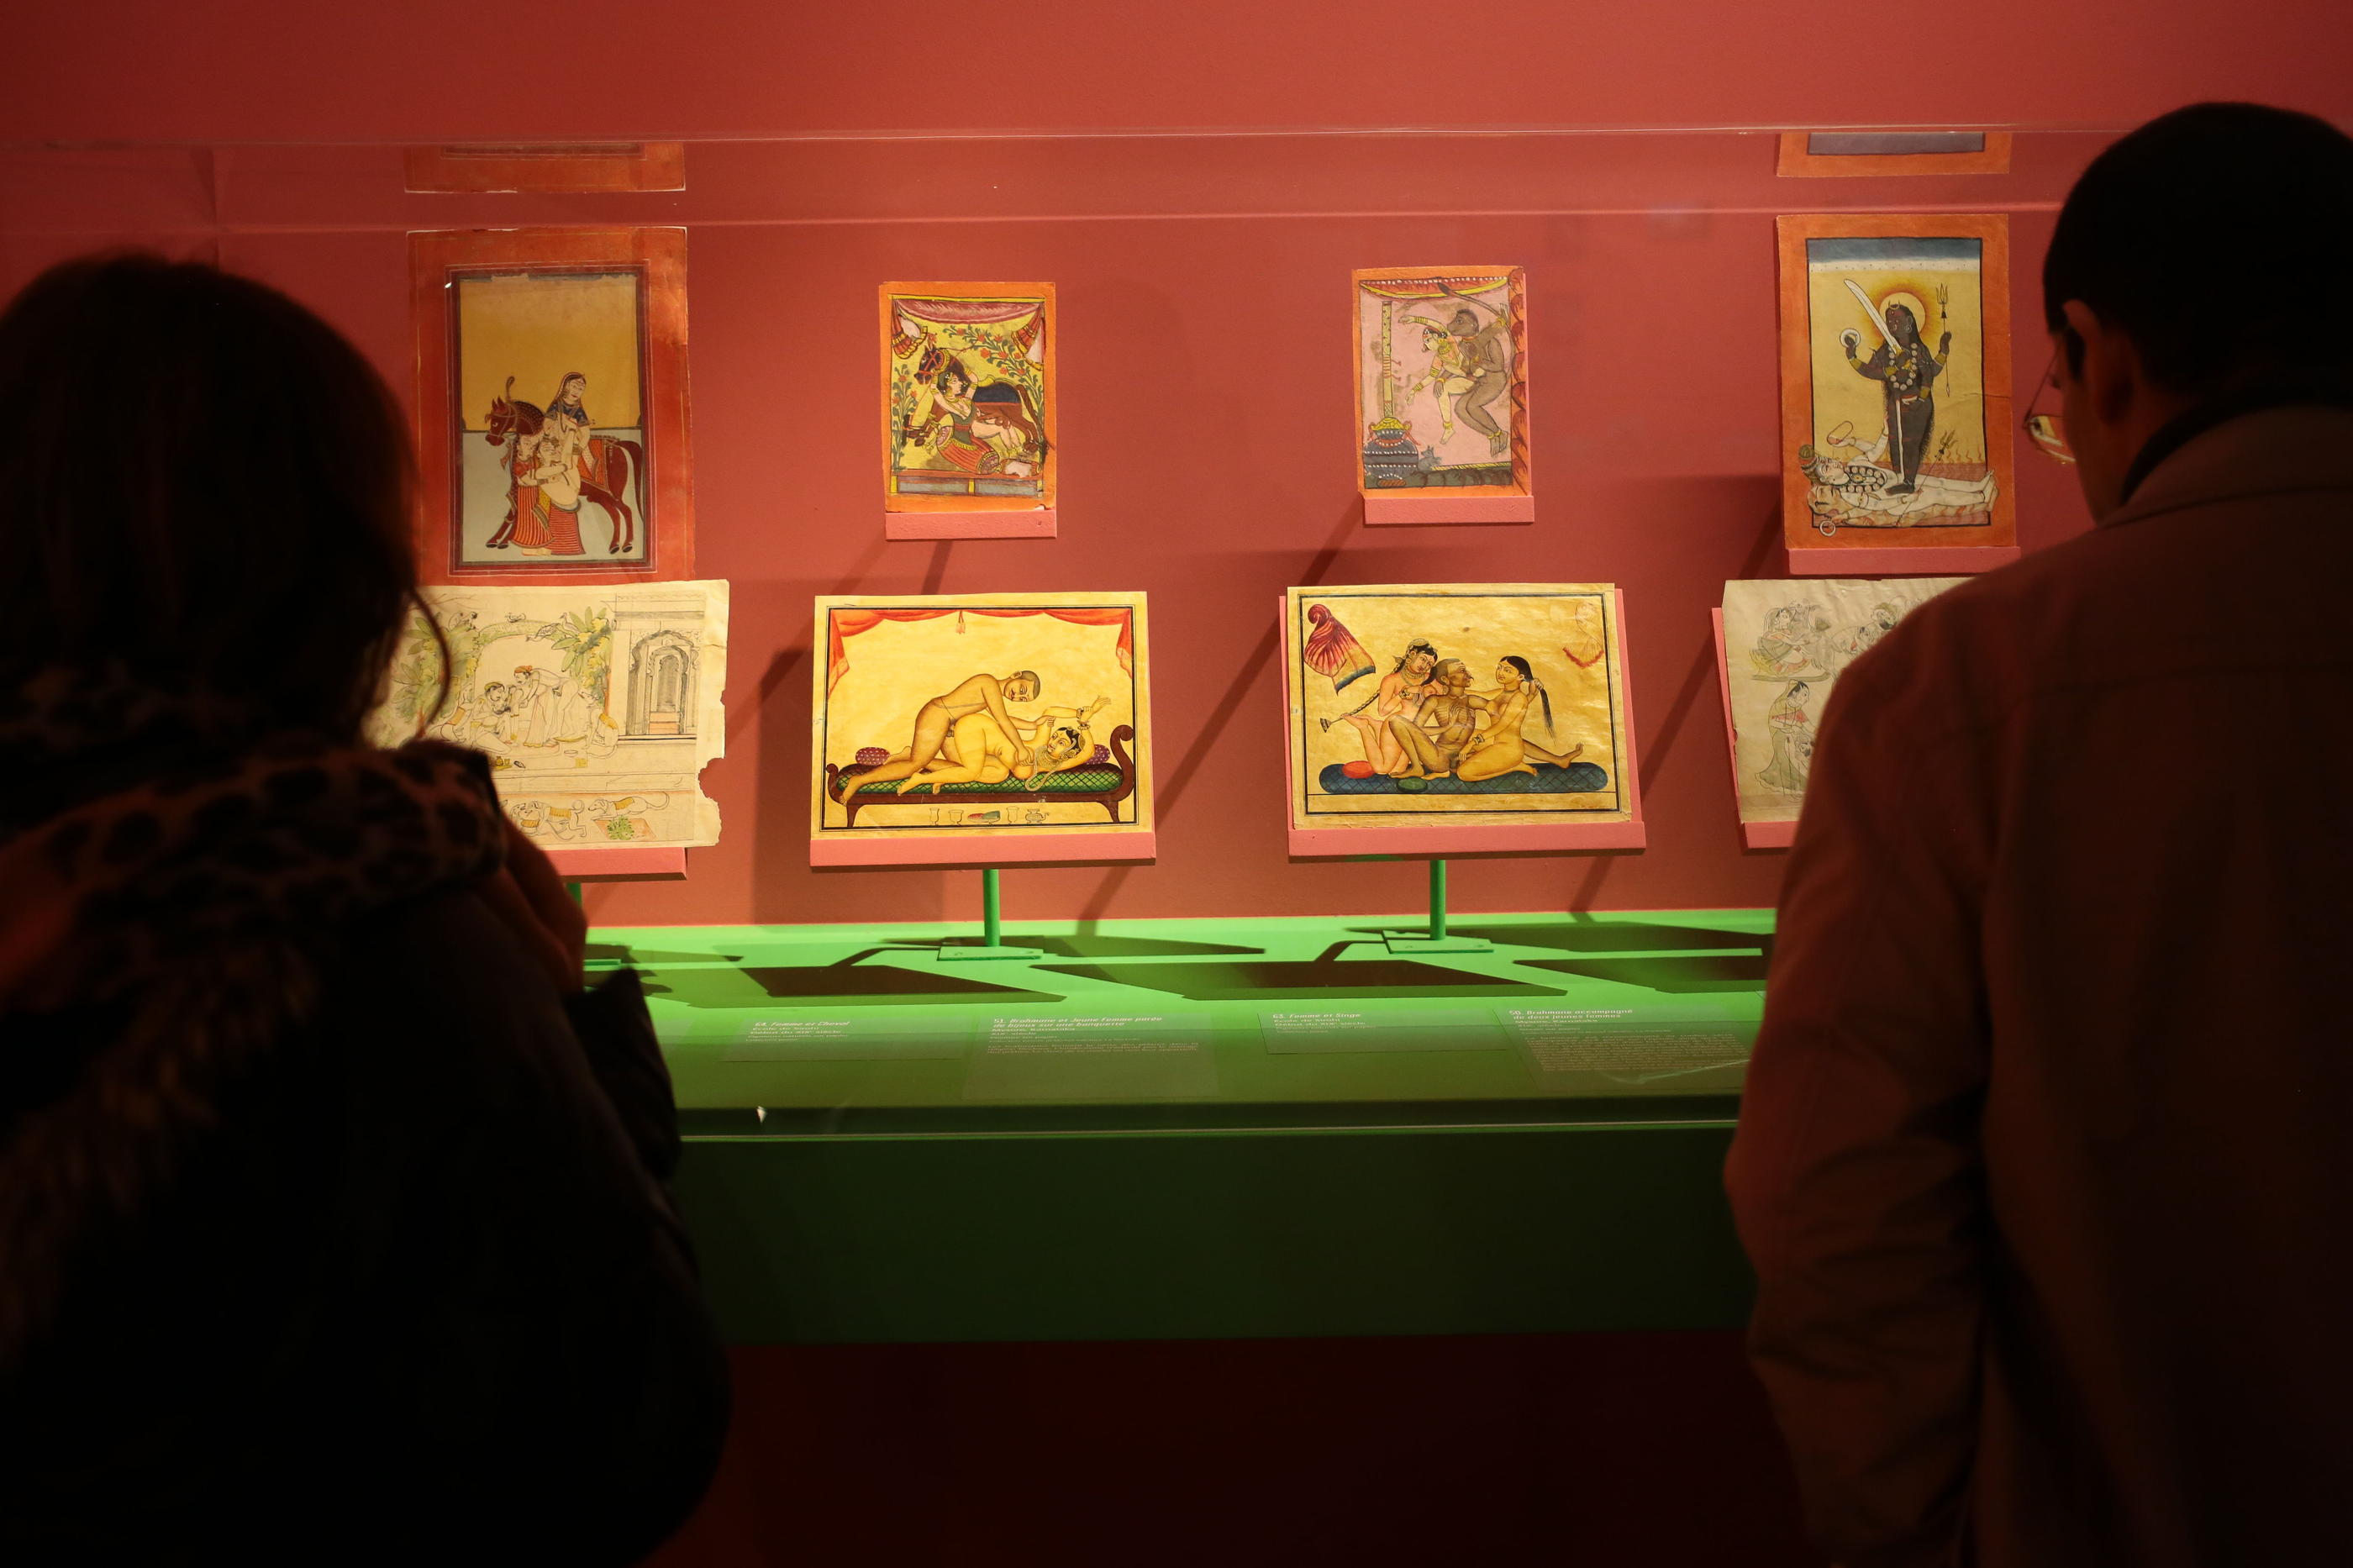 Désormais, les illustrations du Kama-sutra ont plus leur place dans les musées que sur les tables de chevet. (Illustration) LP/Philippe Lavieille